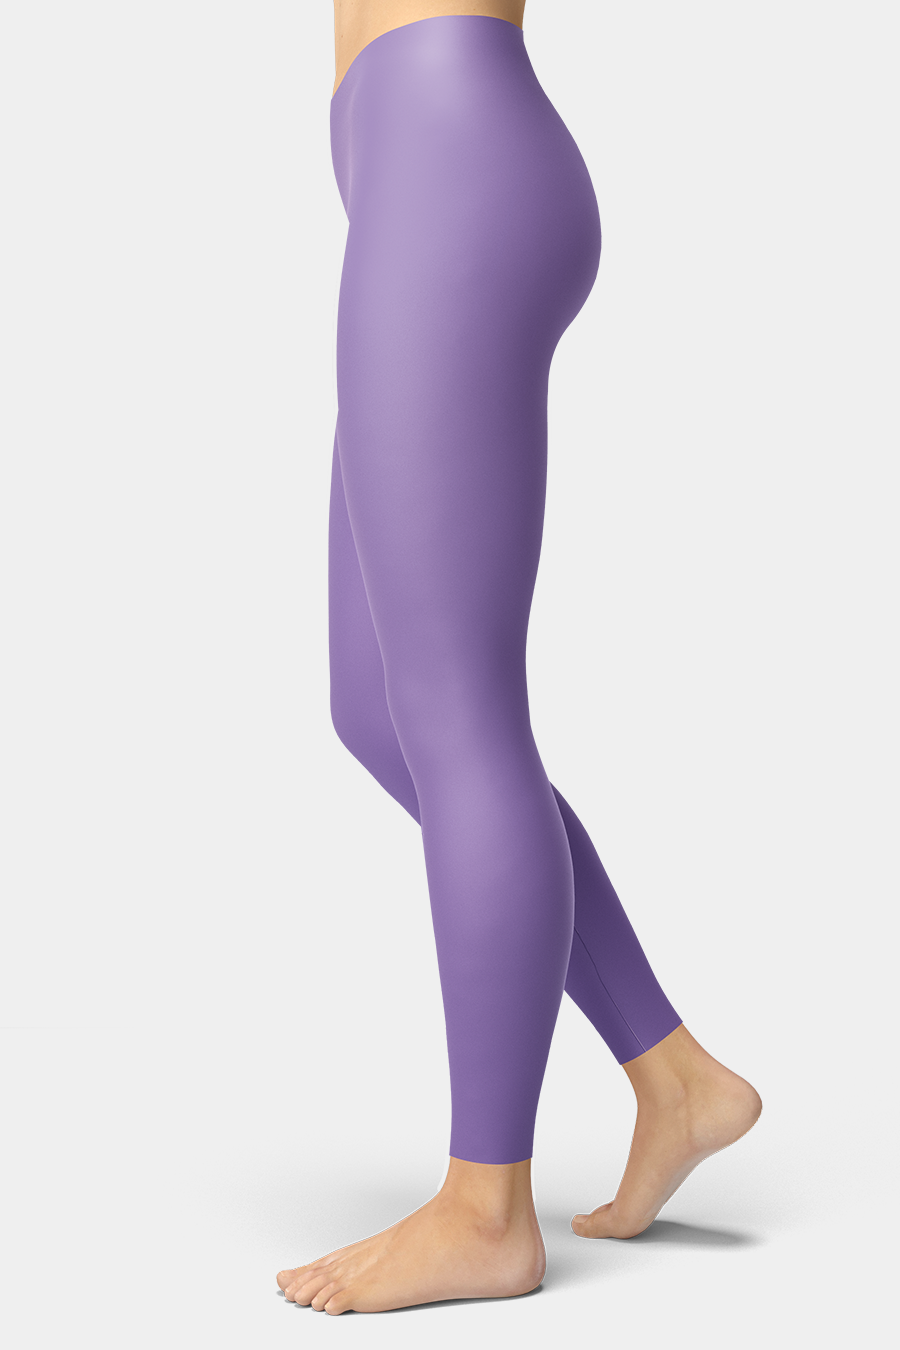 Lavender Purple Leggings – SeeMyLeggings